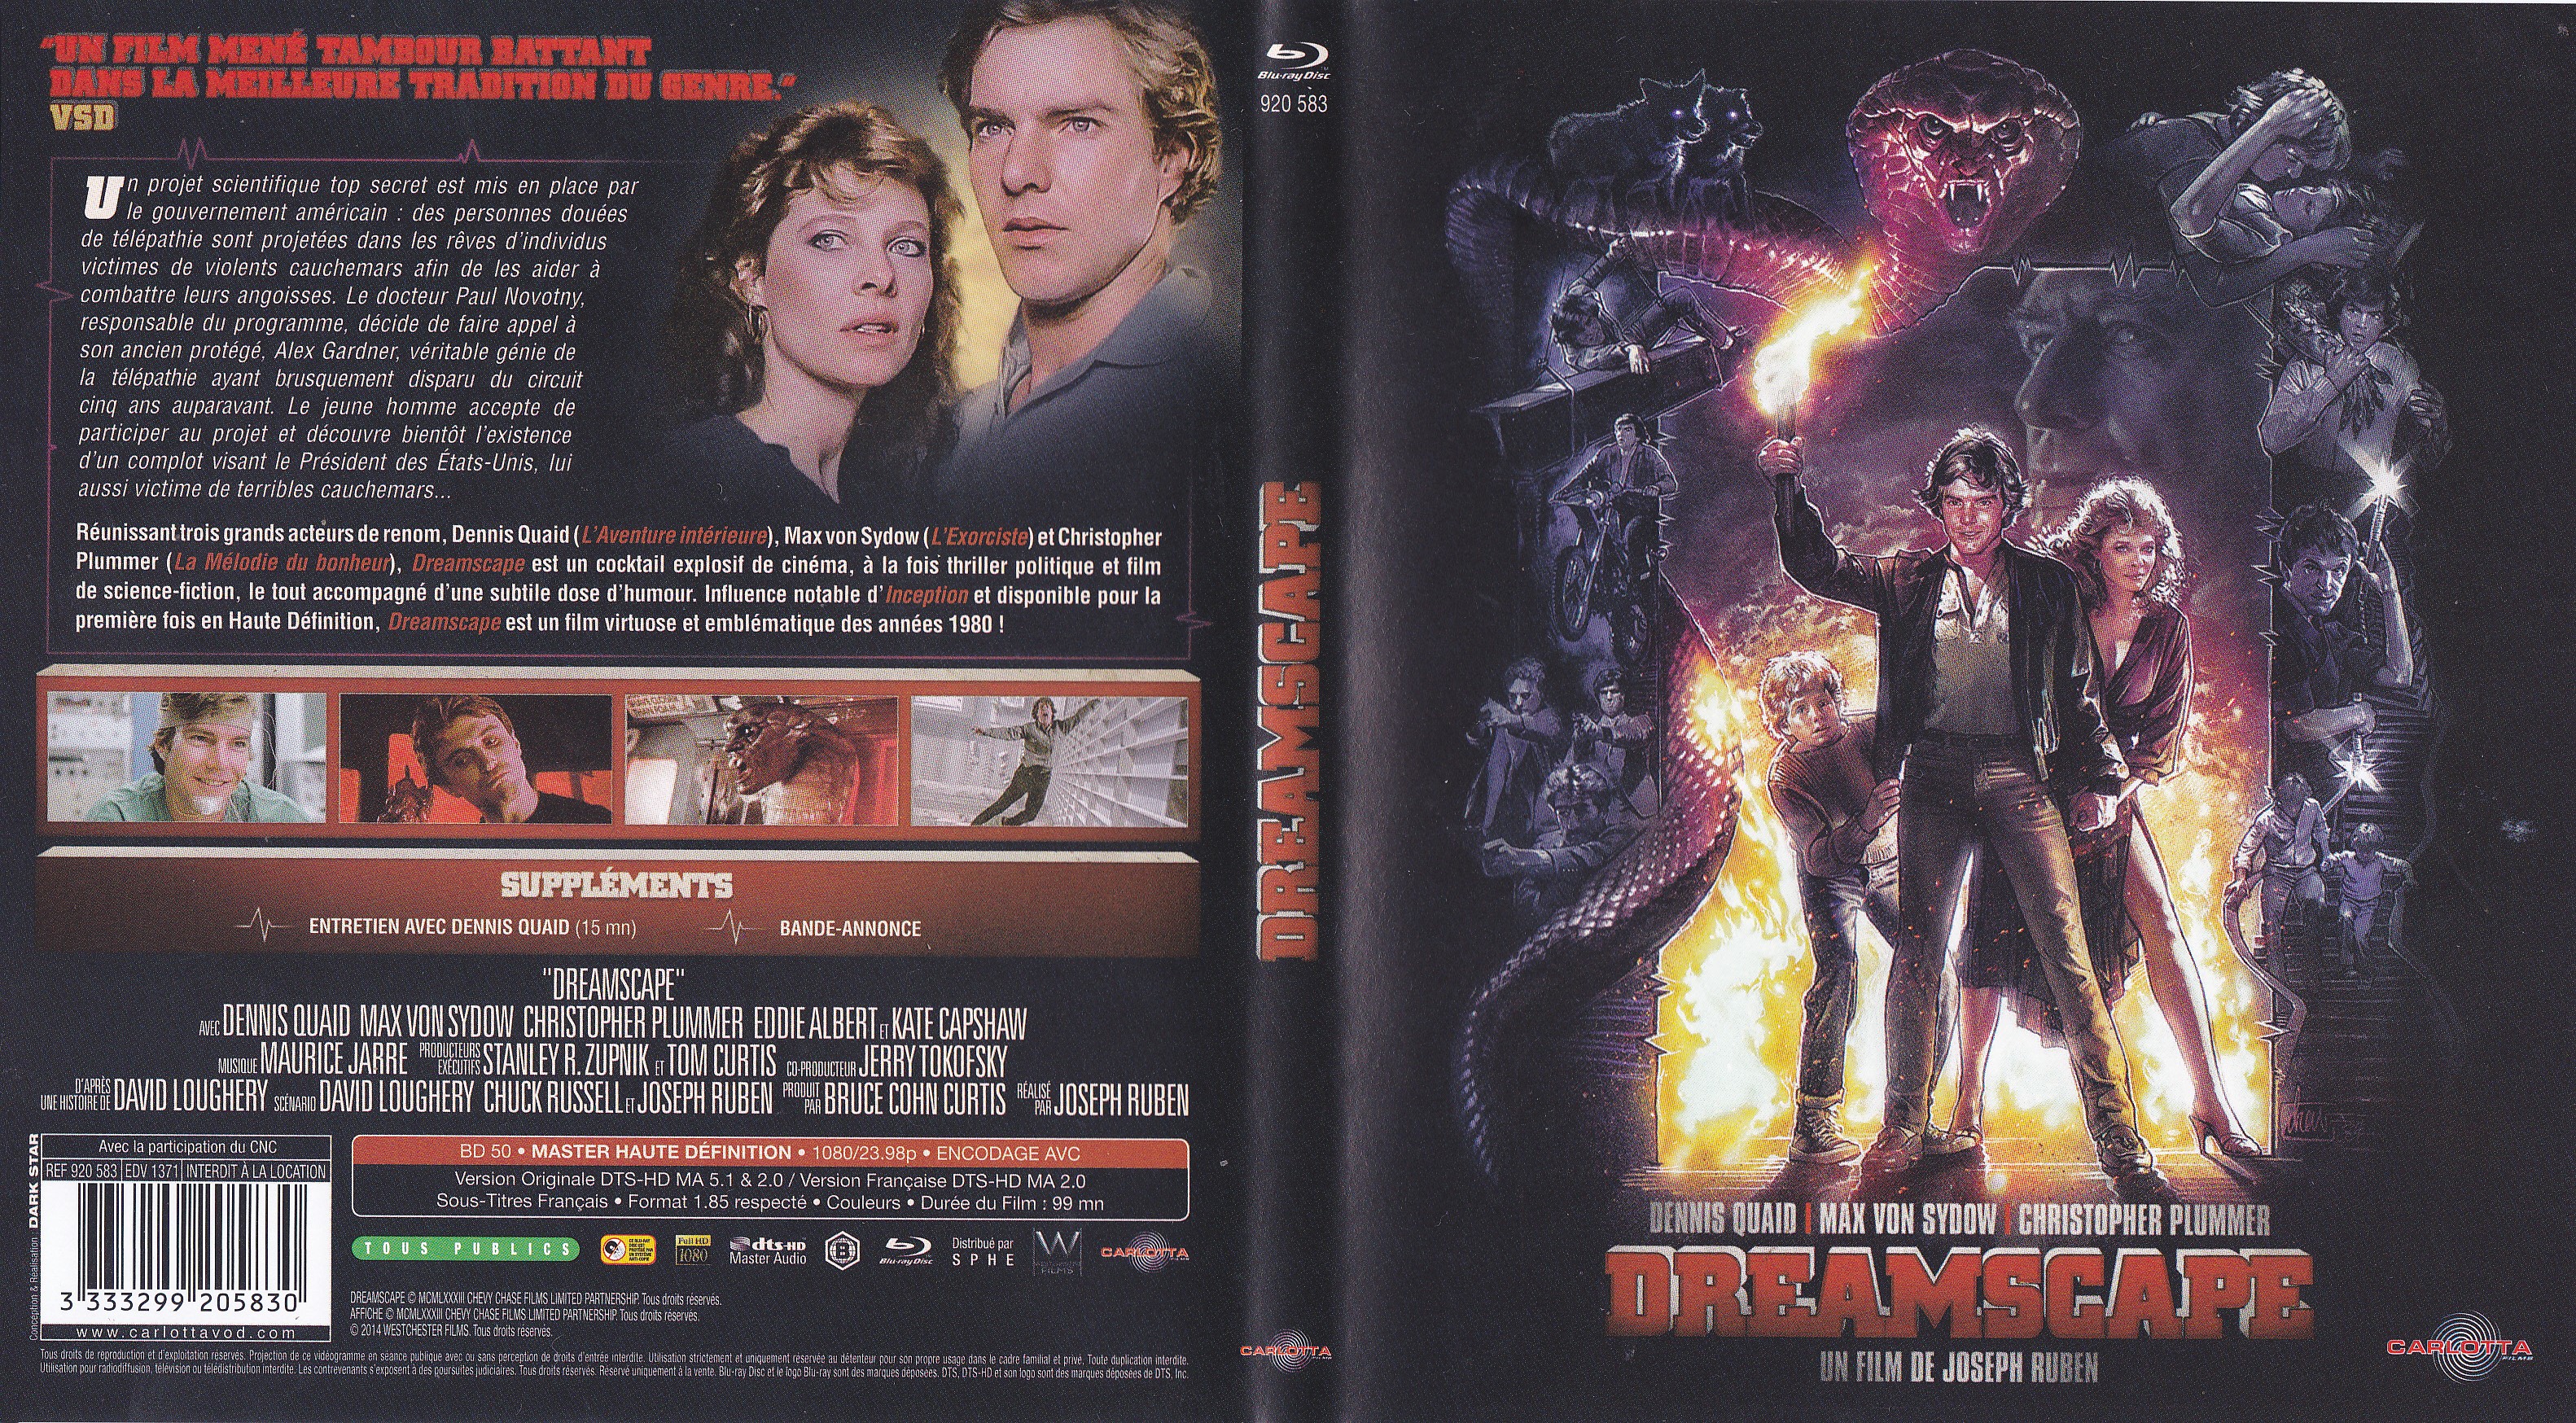 Jaquette DVD Dreamscape (BLU-RAY)